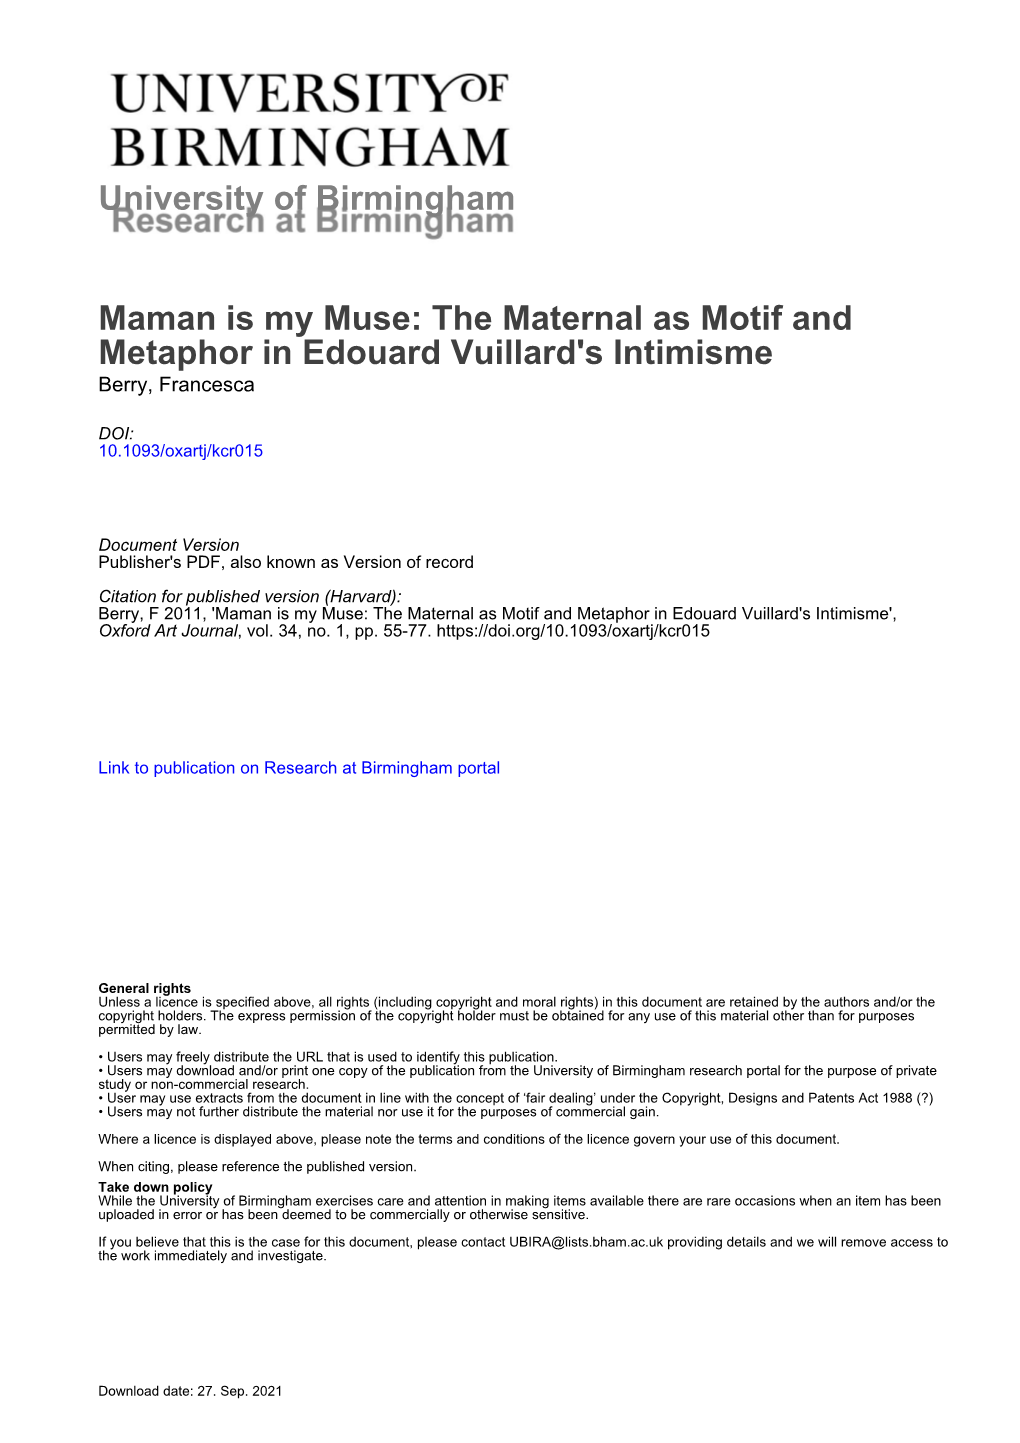 The Maternal As Motif and Metaphor in Edouard Vuillard's Intimisme Berry, Francesca